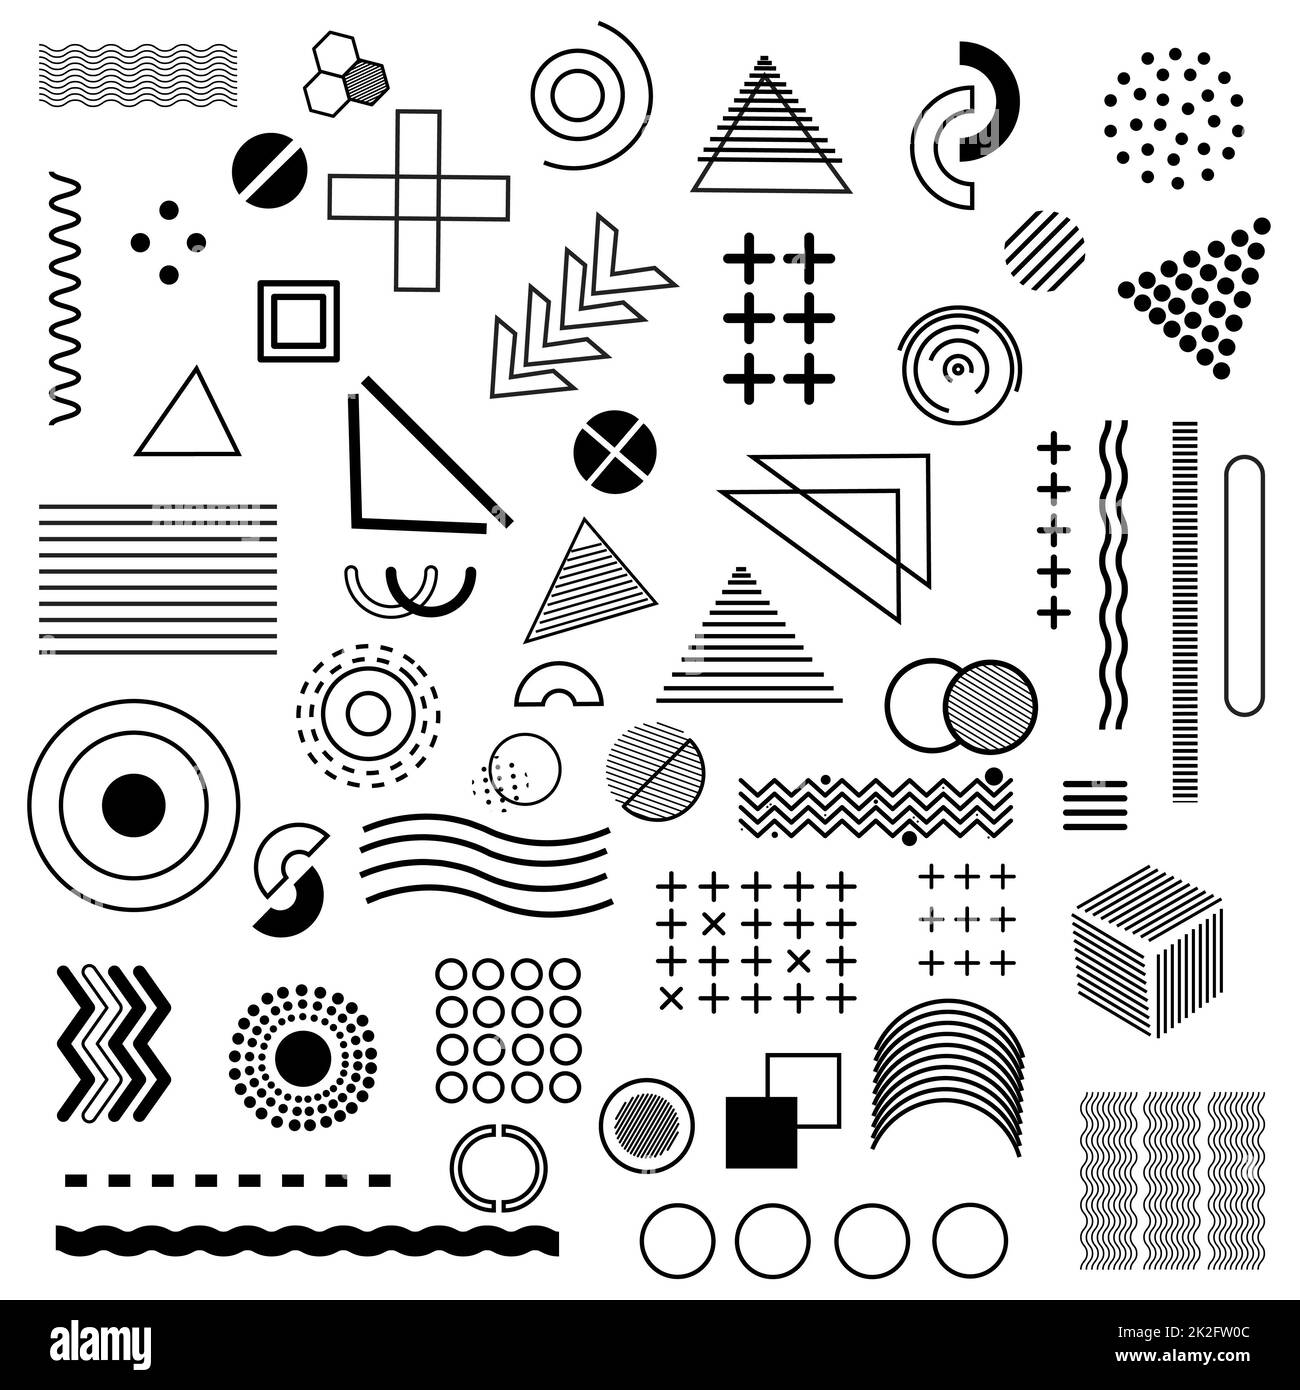 Gran conjunto de diferentes elementos abstractos - Vector Foto de stock